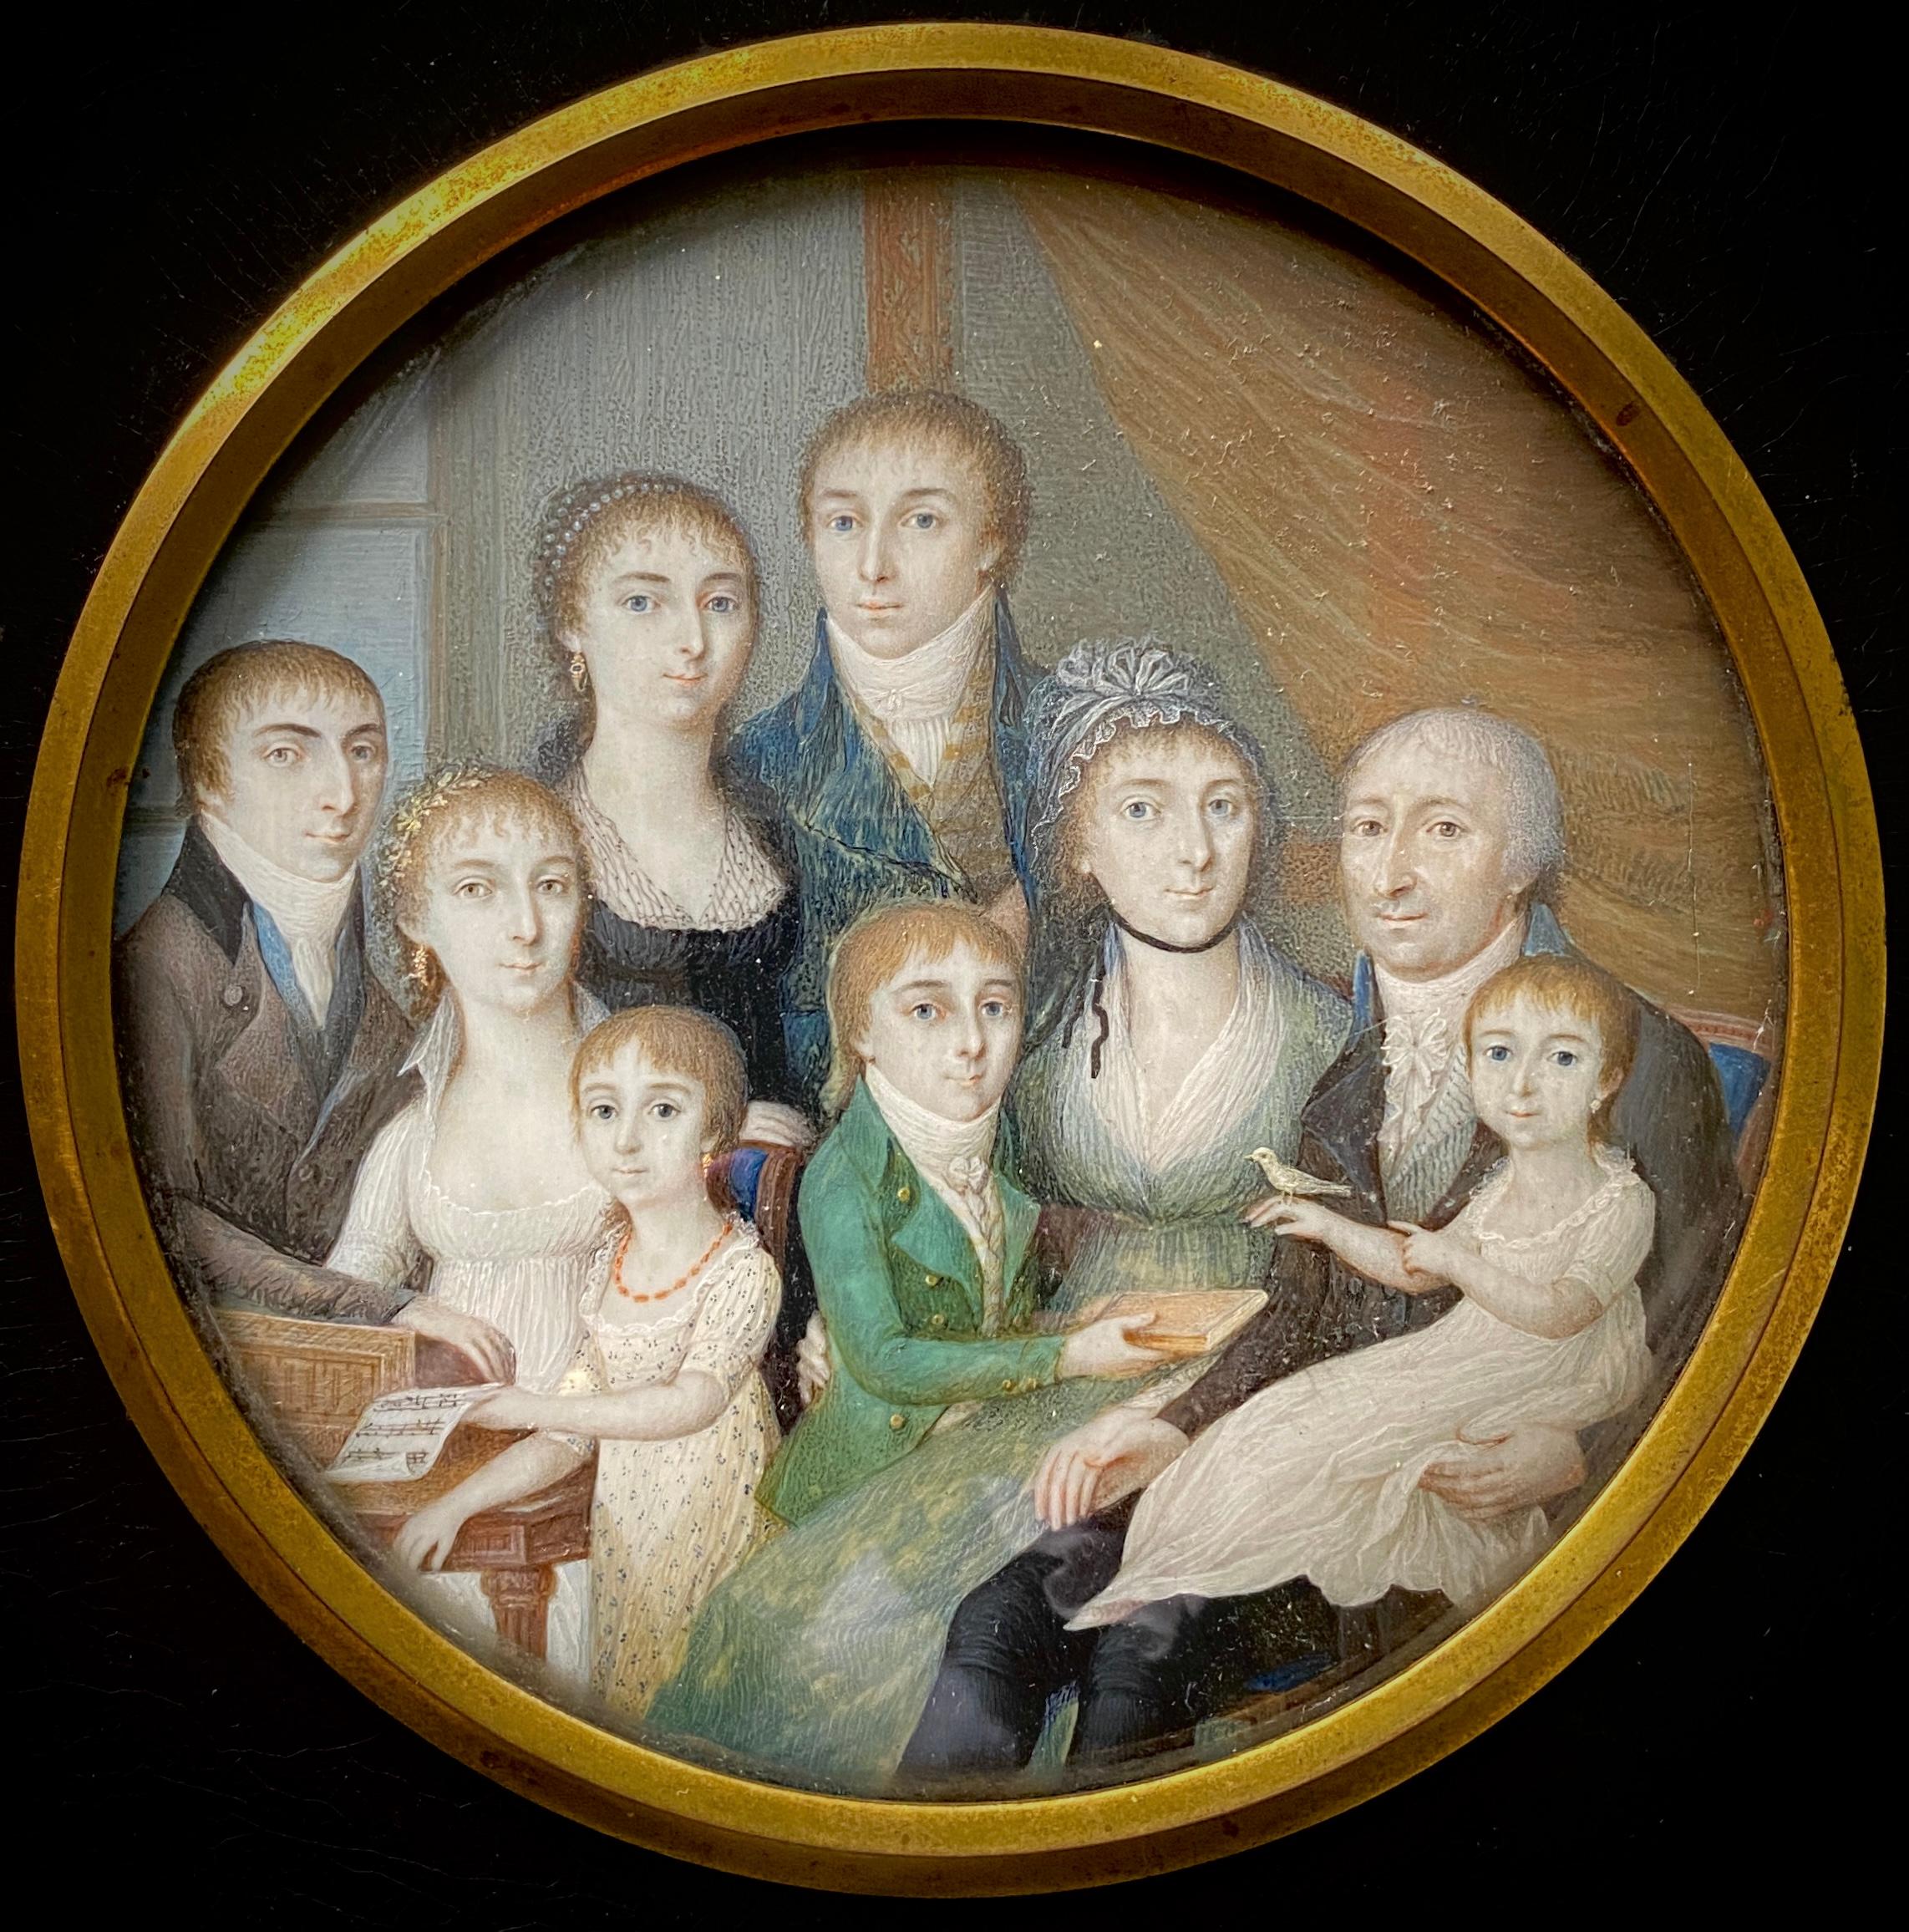 Portrait Painting Unknown - Portrait de famille scandinave, artiste, 18ème siècle, école scandinave